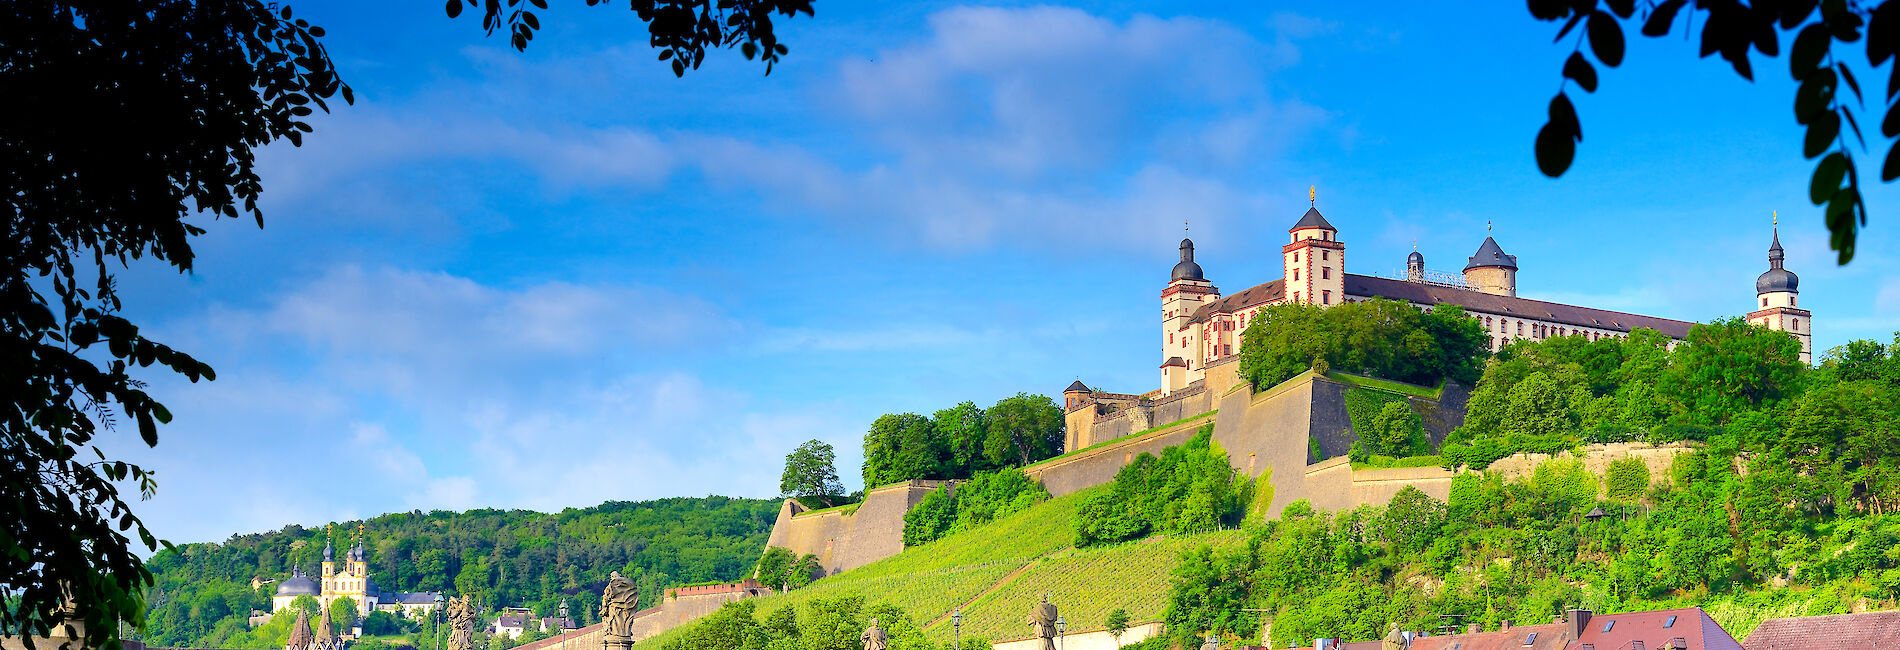 Stadtpanorama von Würzburg